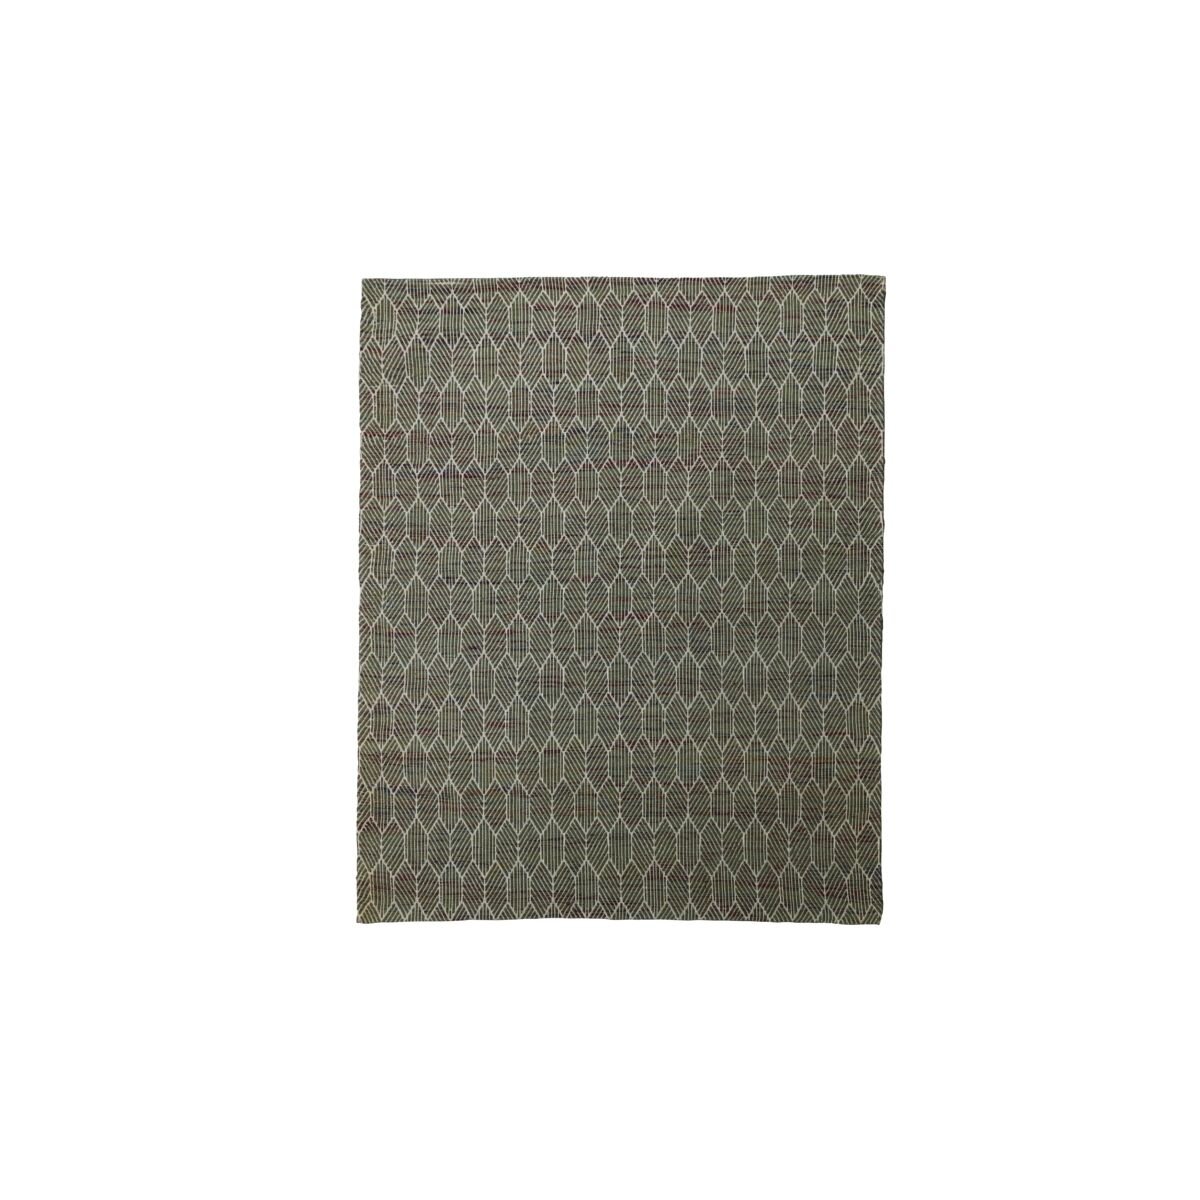 Agon - Tappeto in cotone 180 x 180 cm